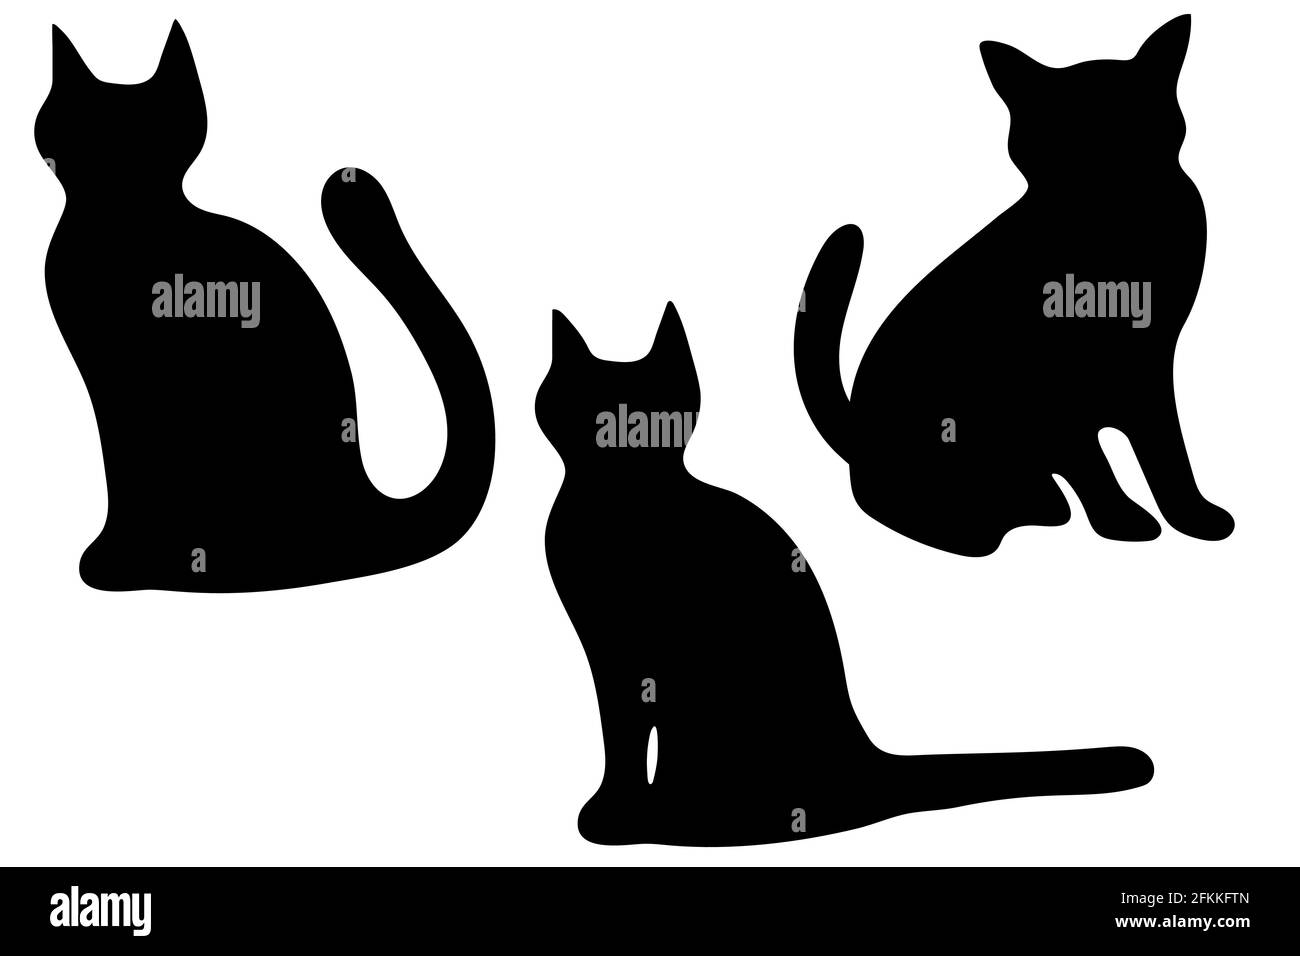 Ensemble de silhouettes noires de chat dans différentes poses isolées sur fond blanc. Illustration vectorielle plate. Illustration de Vecteur